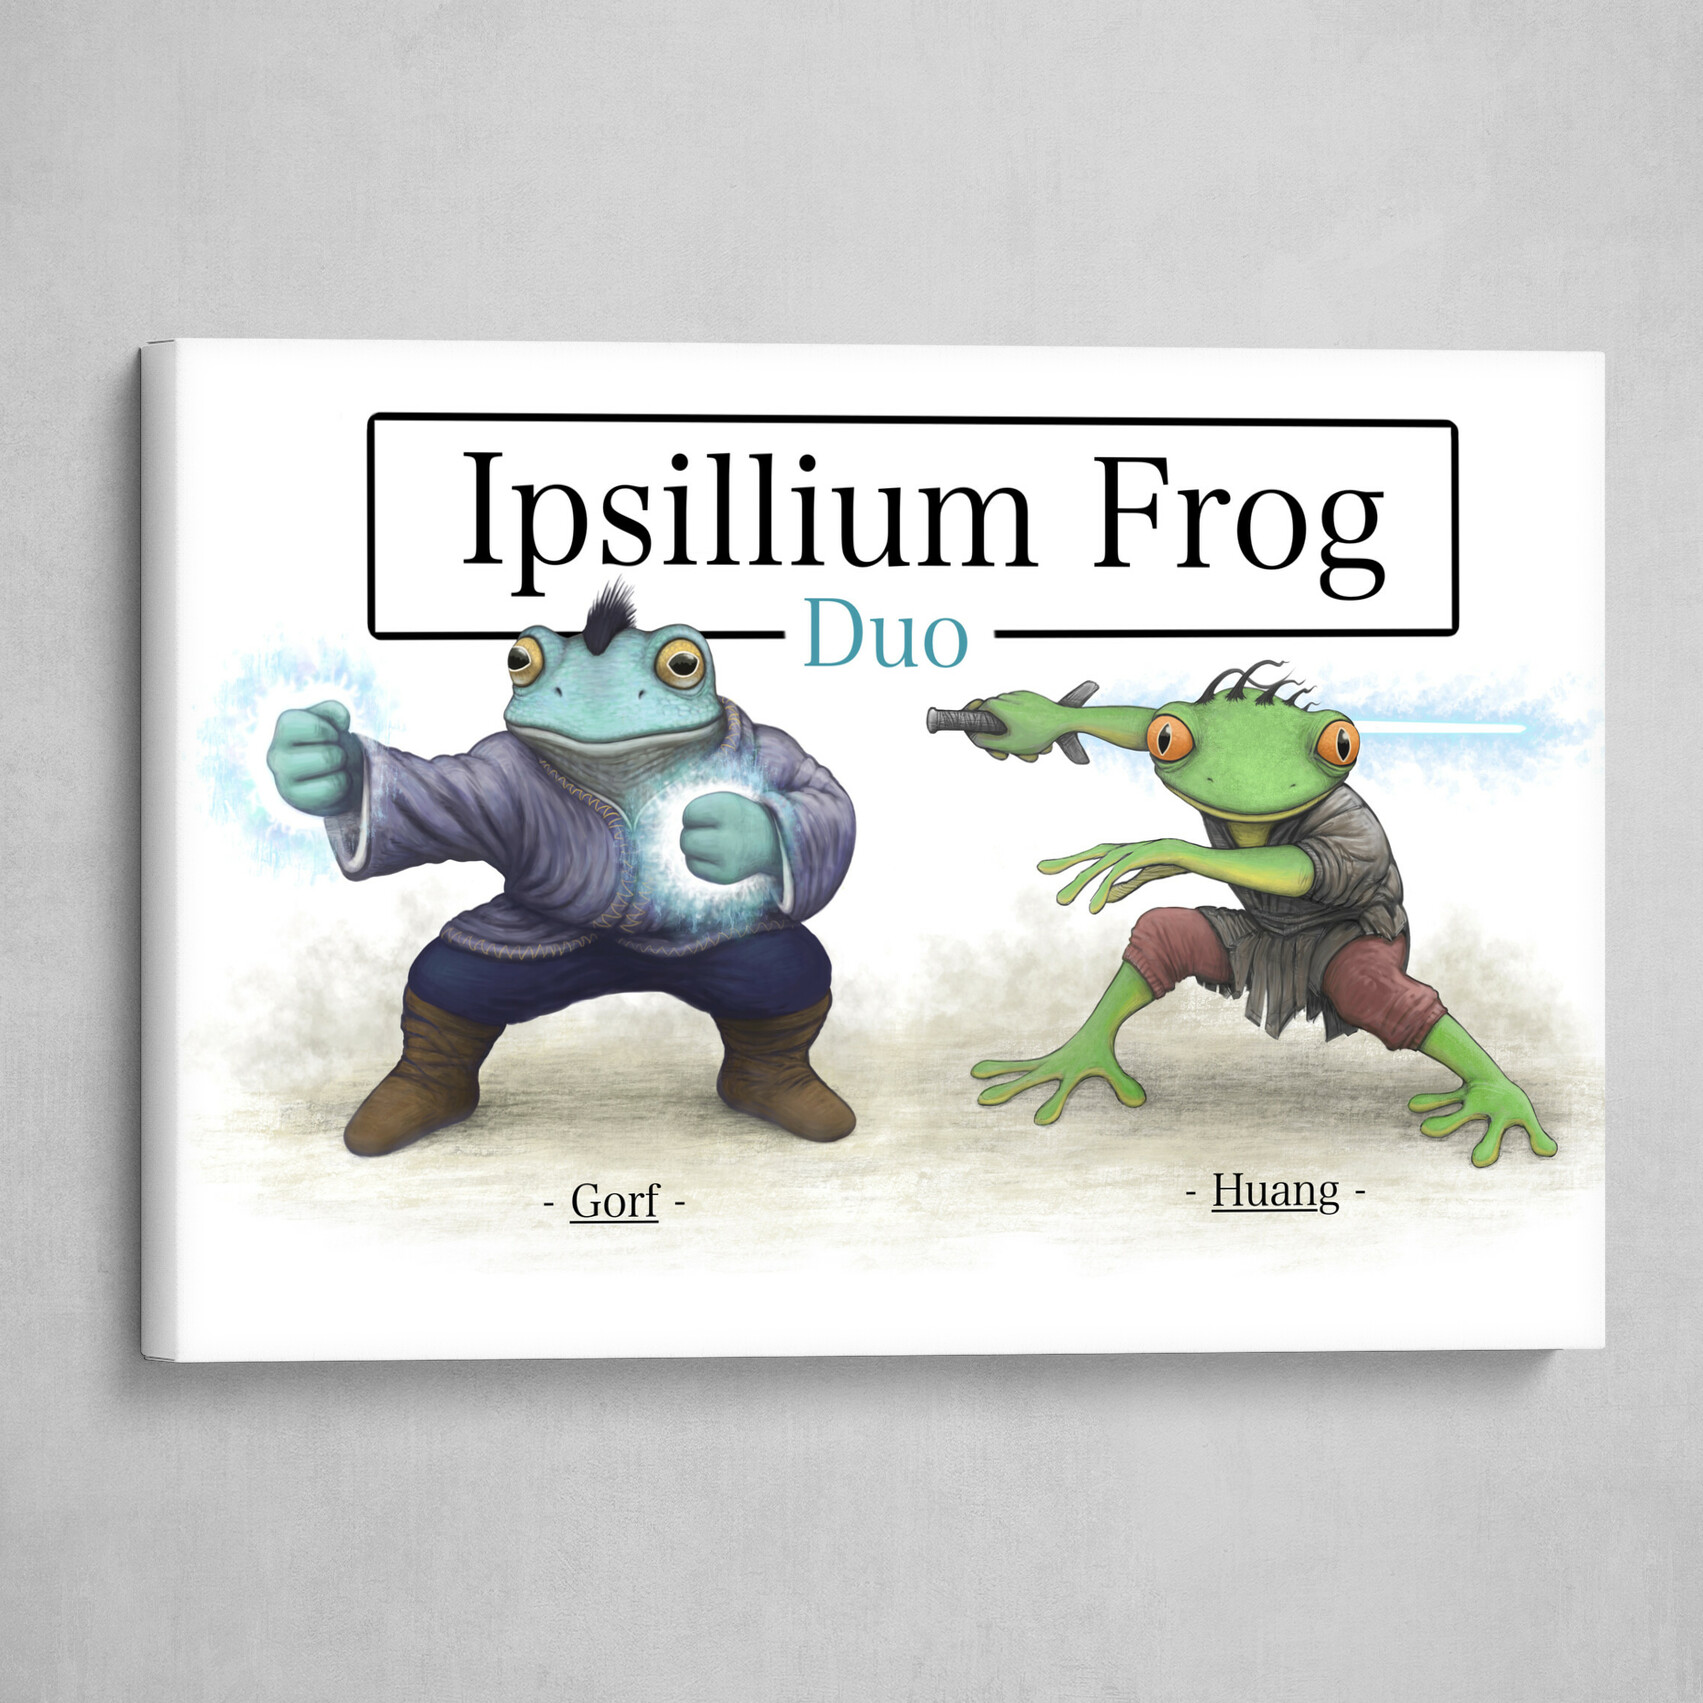 Ipsillium Frog Duo